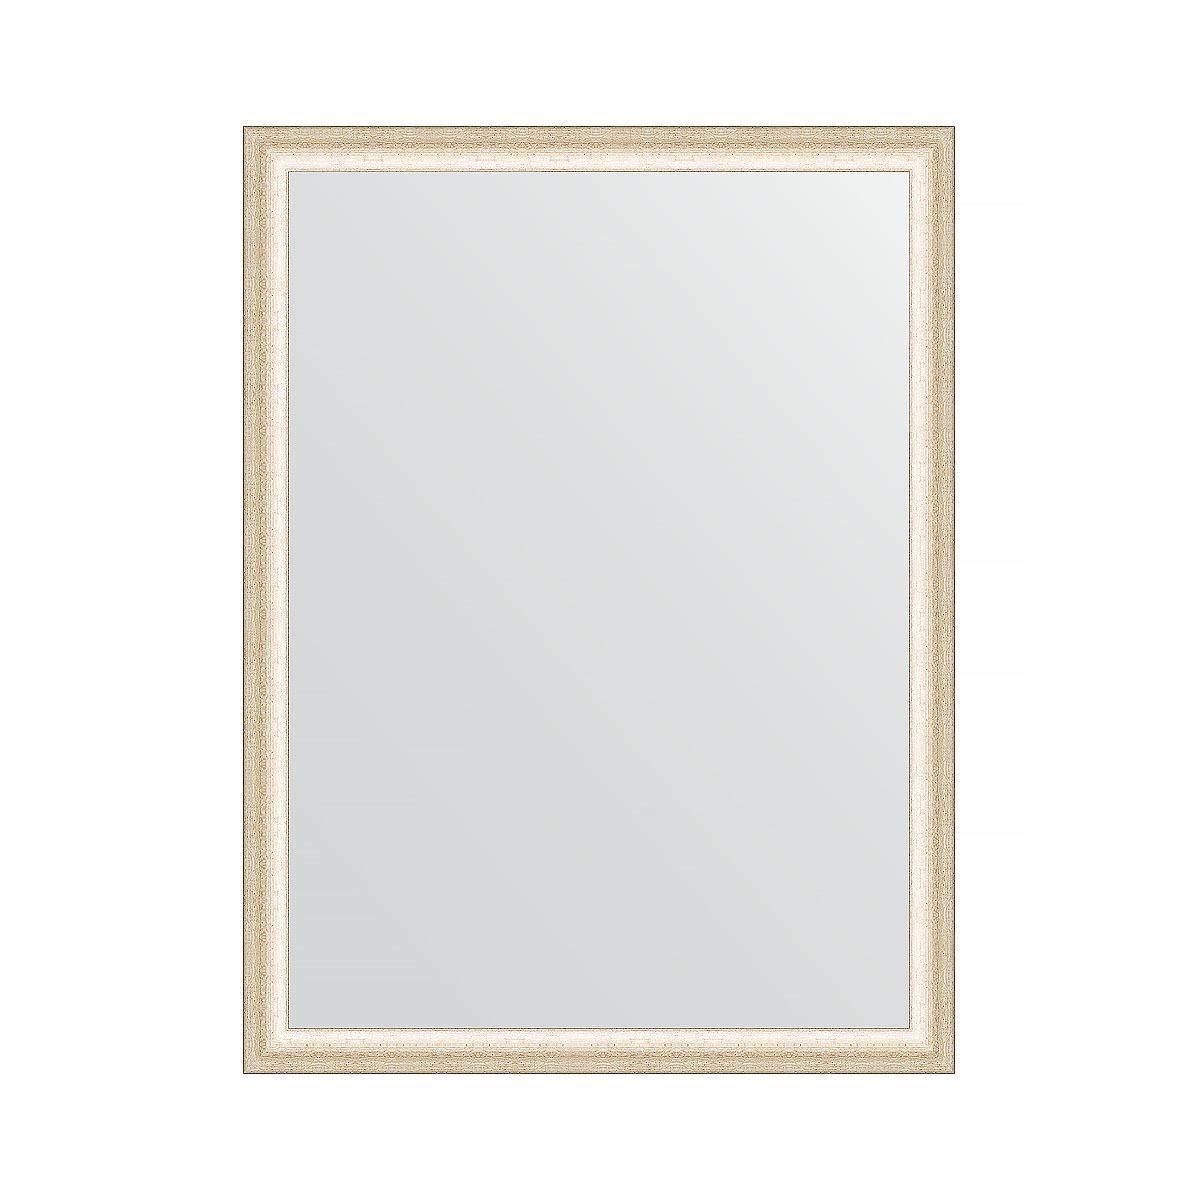 Зеркало в багетной раме Evoform состаренное серебро 37 мм 60х80 см зеркало в багетной раме evoform виньетка состаренное серебро 56 мм 54х74 см